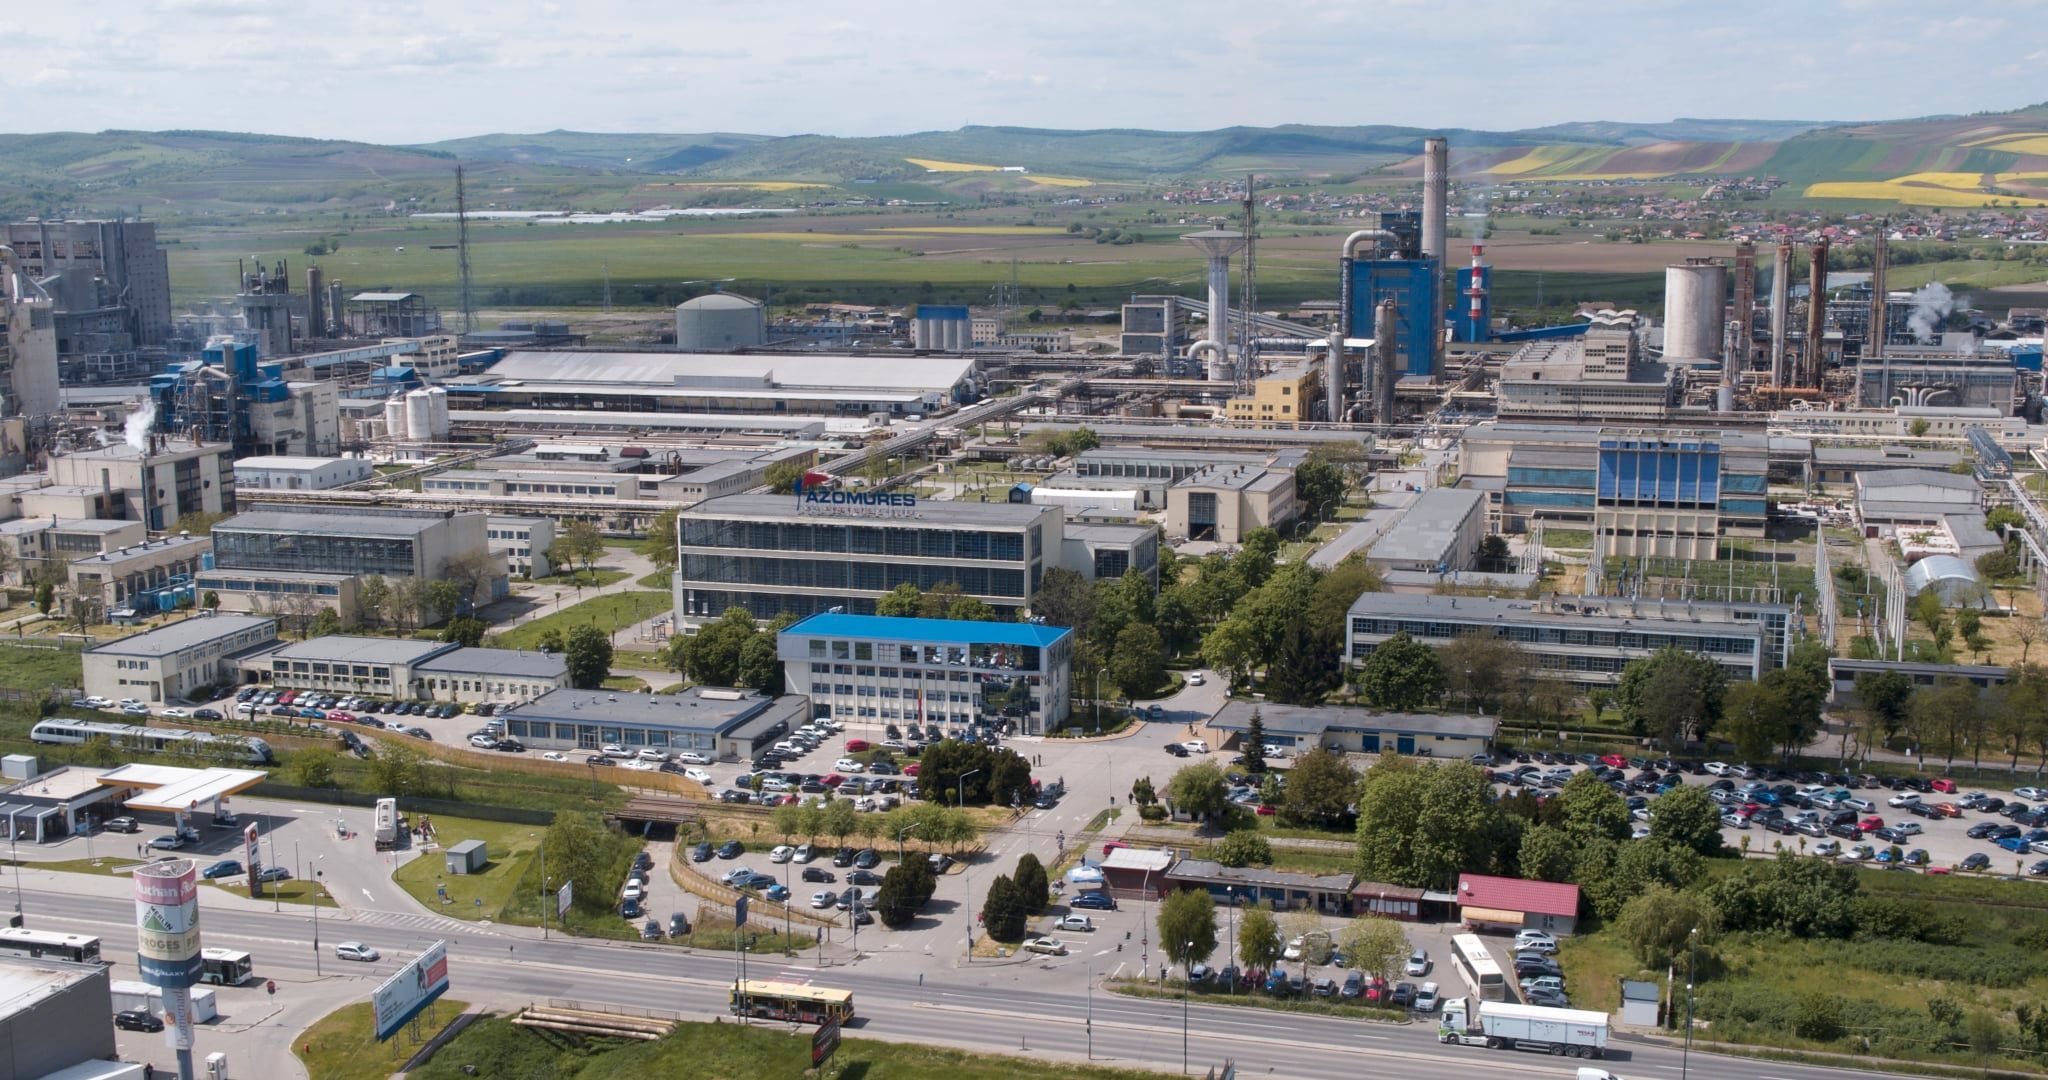 Újraindíthatja az Azomureș vegyipari üzem a műtrágyagyártást